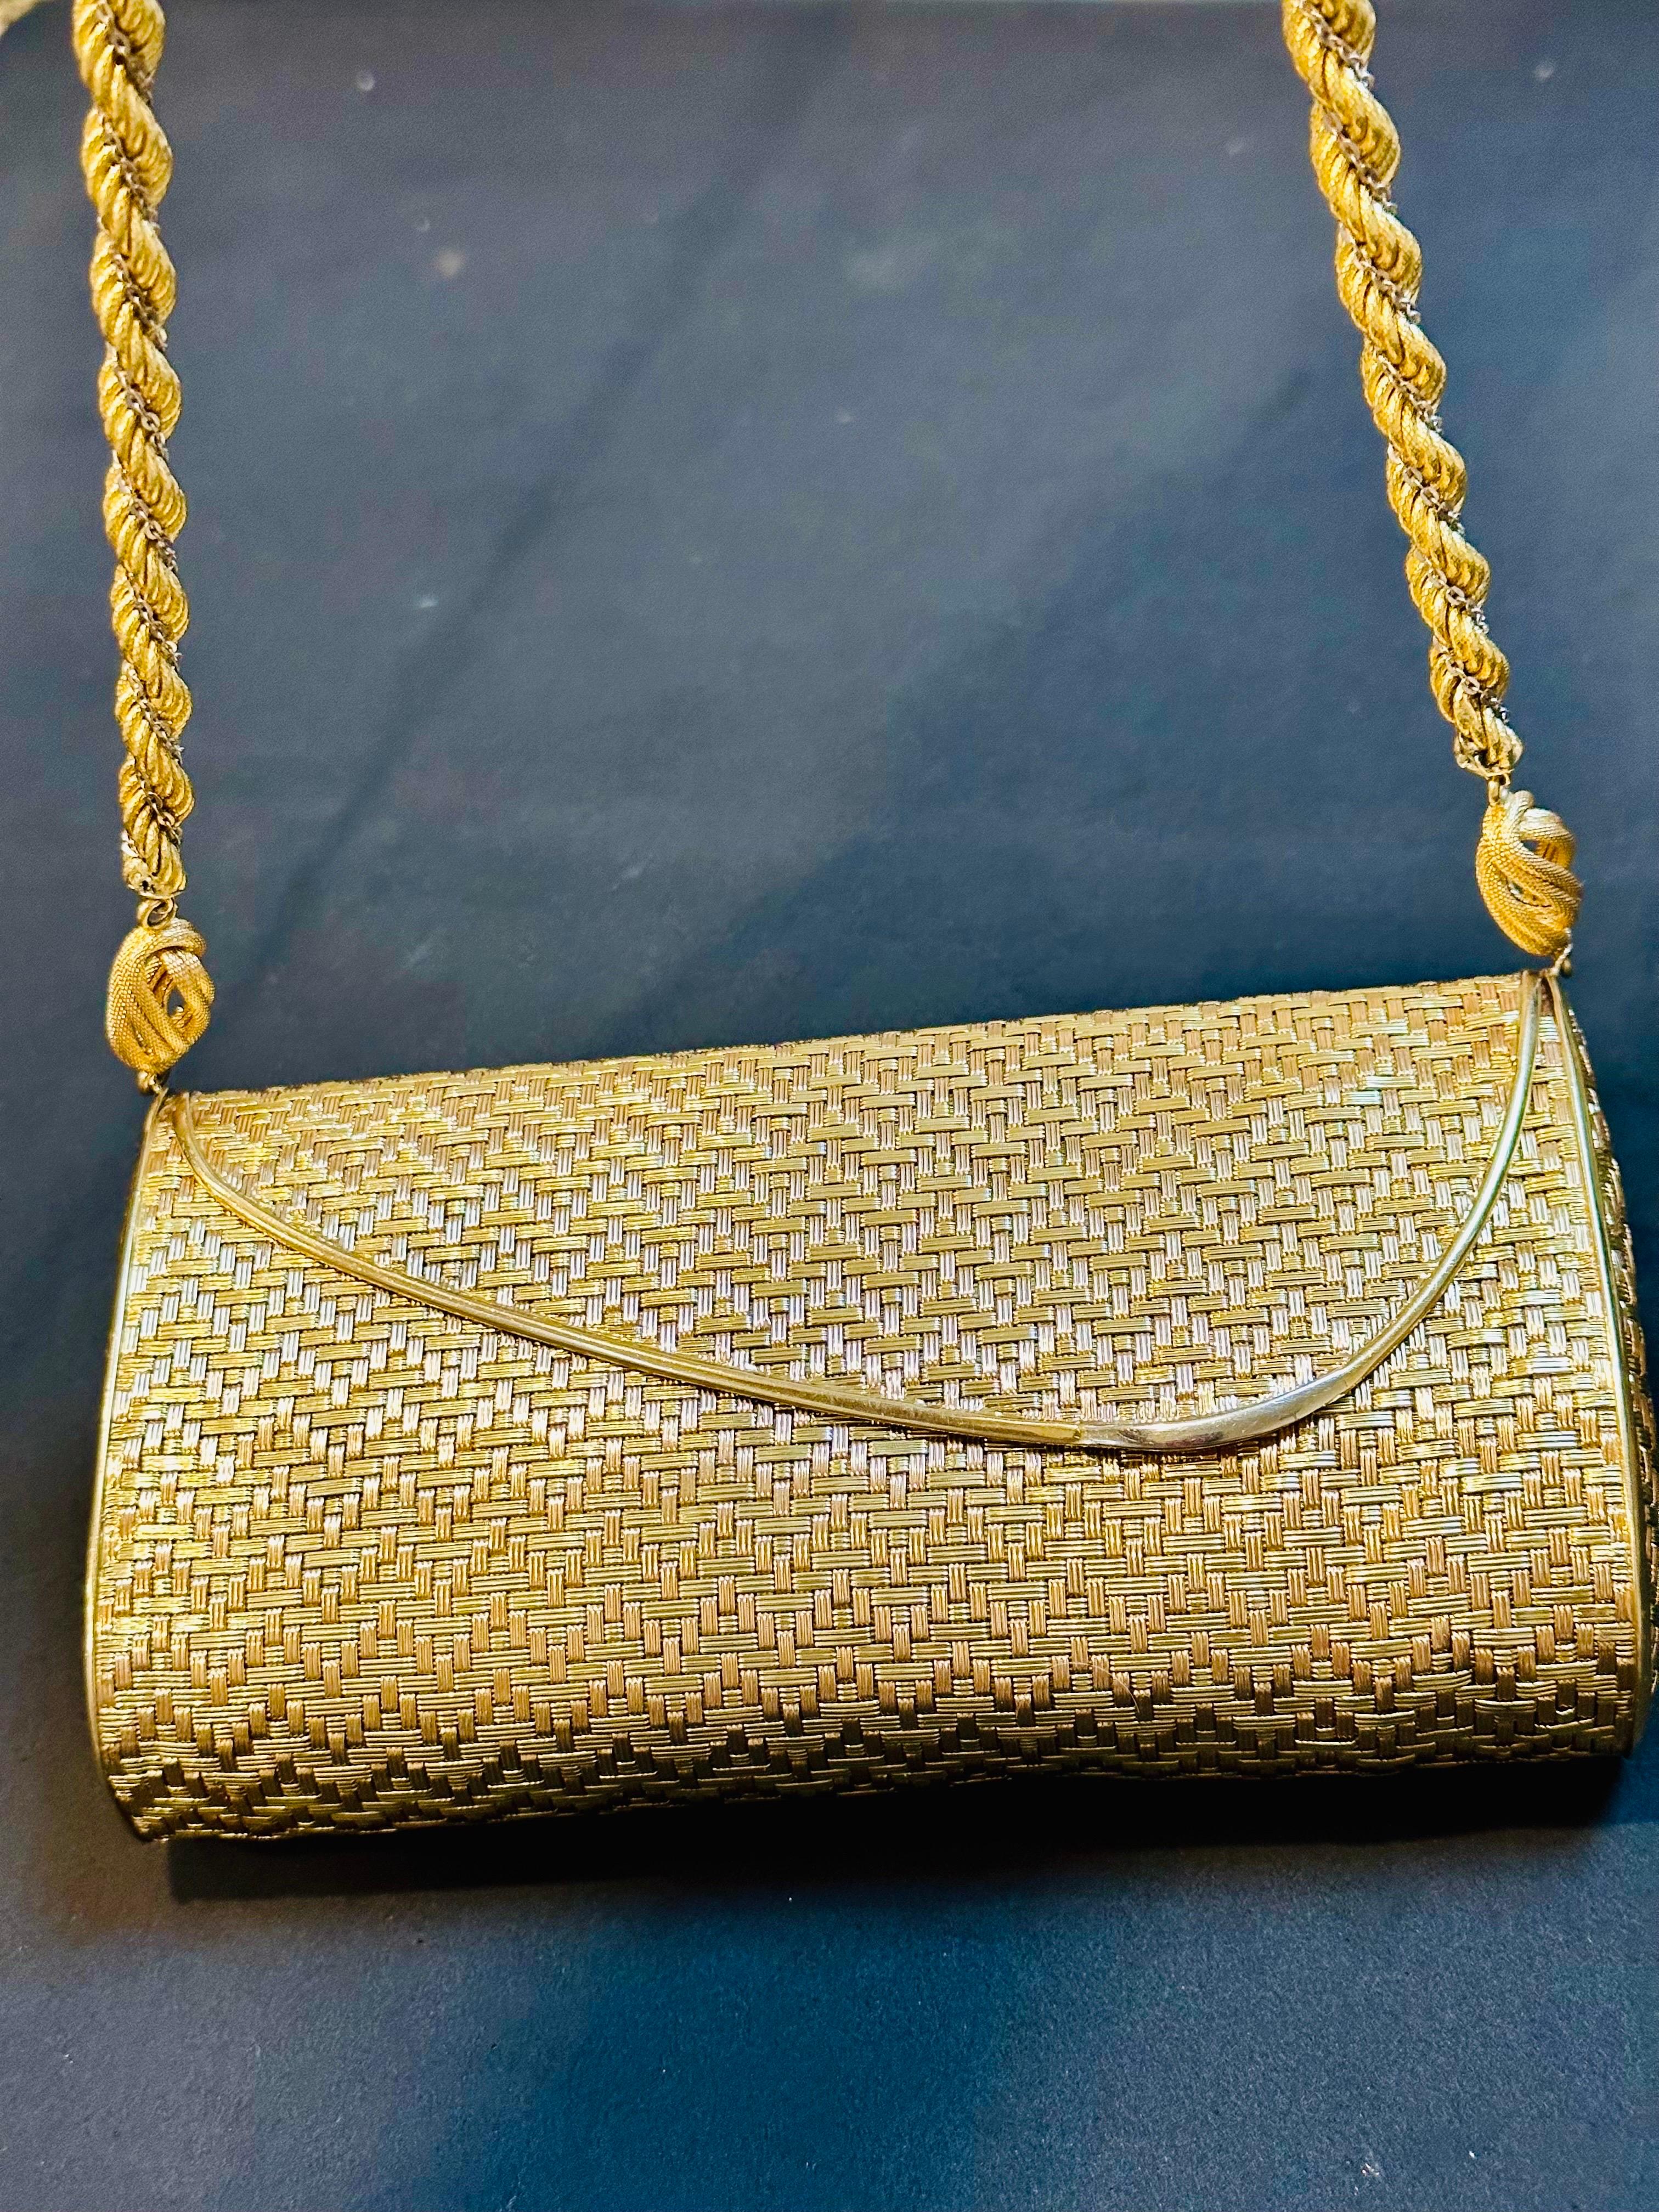 Cartier - Sac à main en maille or jaune 18 carats avec chaîne à l'épaule - Rare - 401 Gm 1